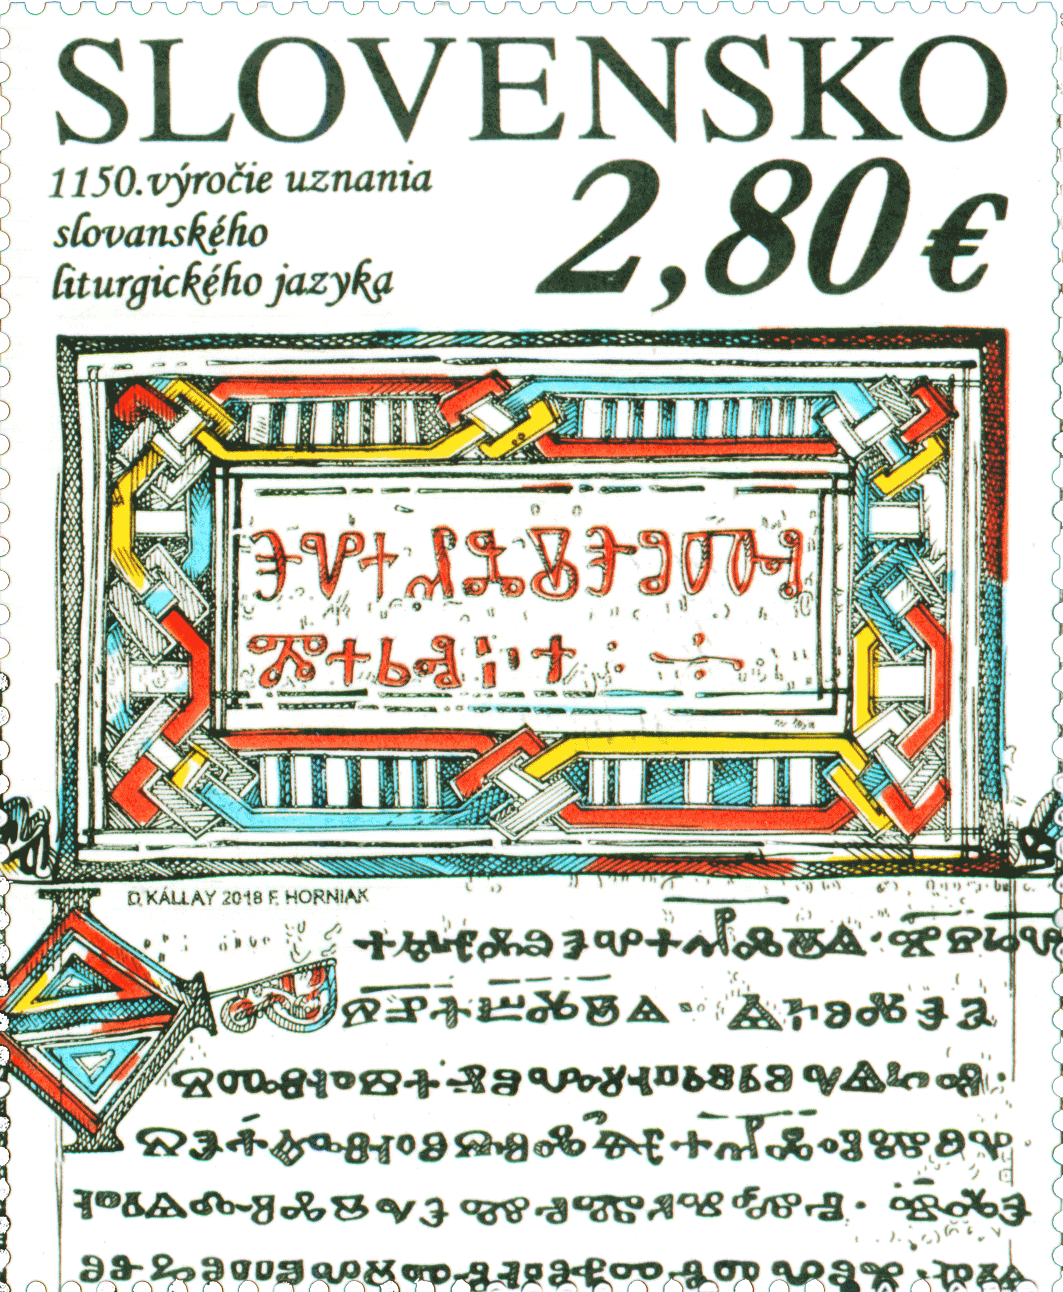 660 - Spoločné vydanie s Vatikánskym mestským štátom: 1150. výročie uznania slovanského liturgického jazyka